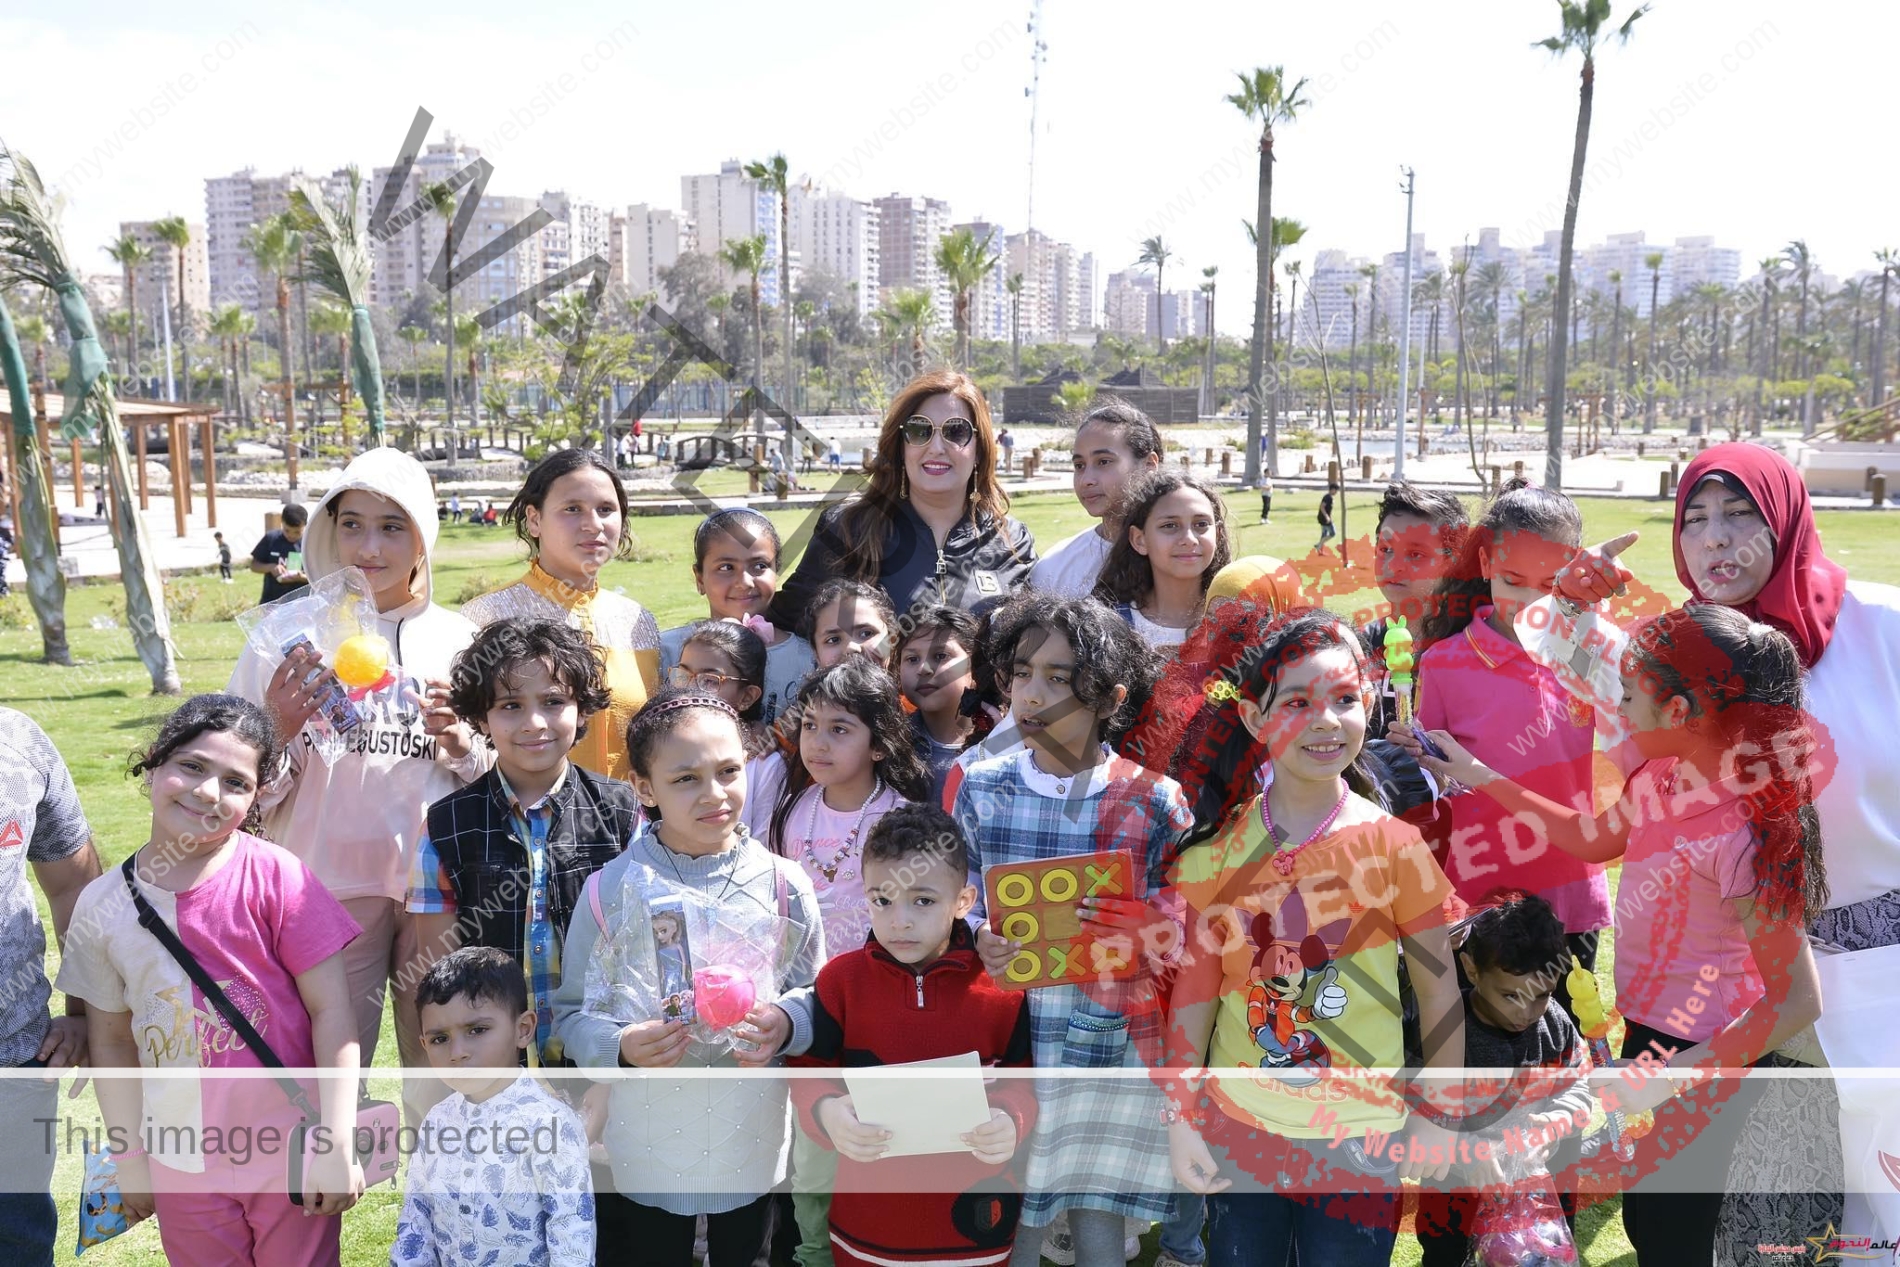 دعاء نصر رائدة مبادرة "اليوم الترفيهي الأول بالإسكندرية" تحت رعاية محافظ الإسكندرية لتنشيط السياحة